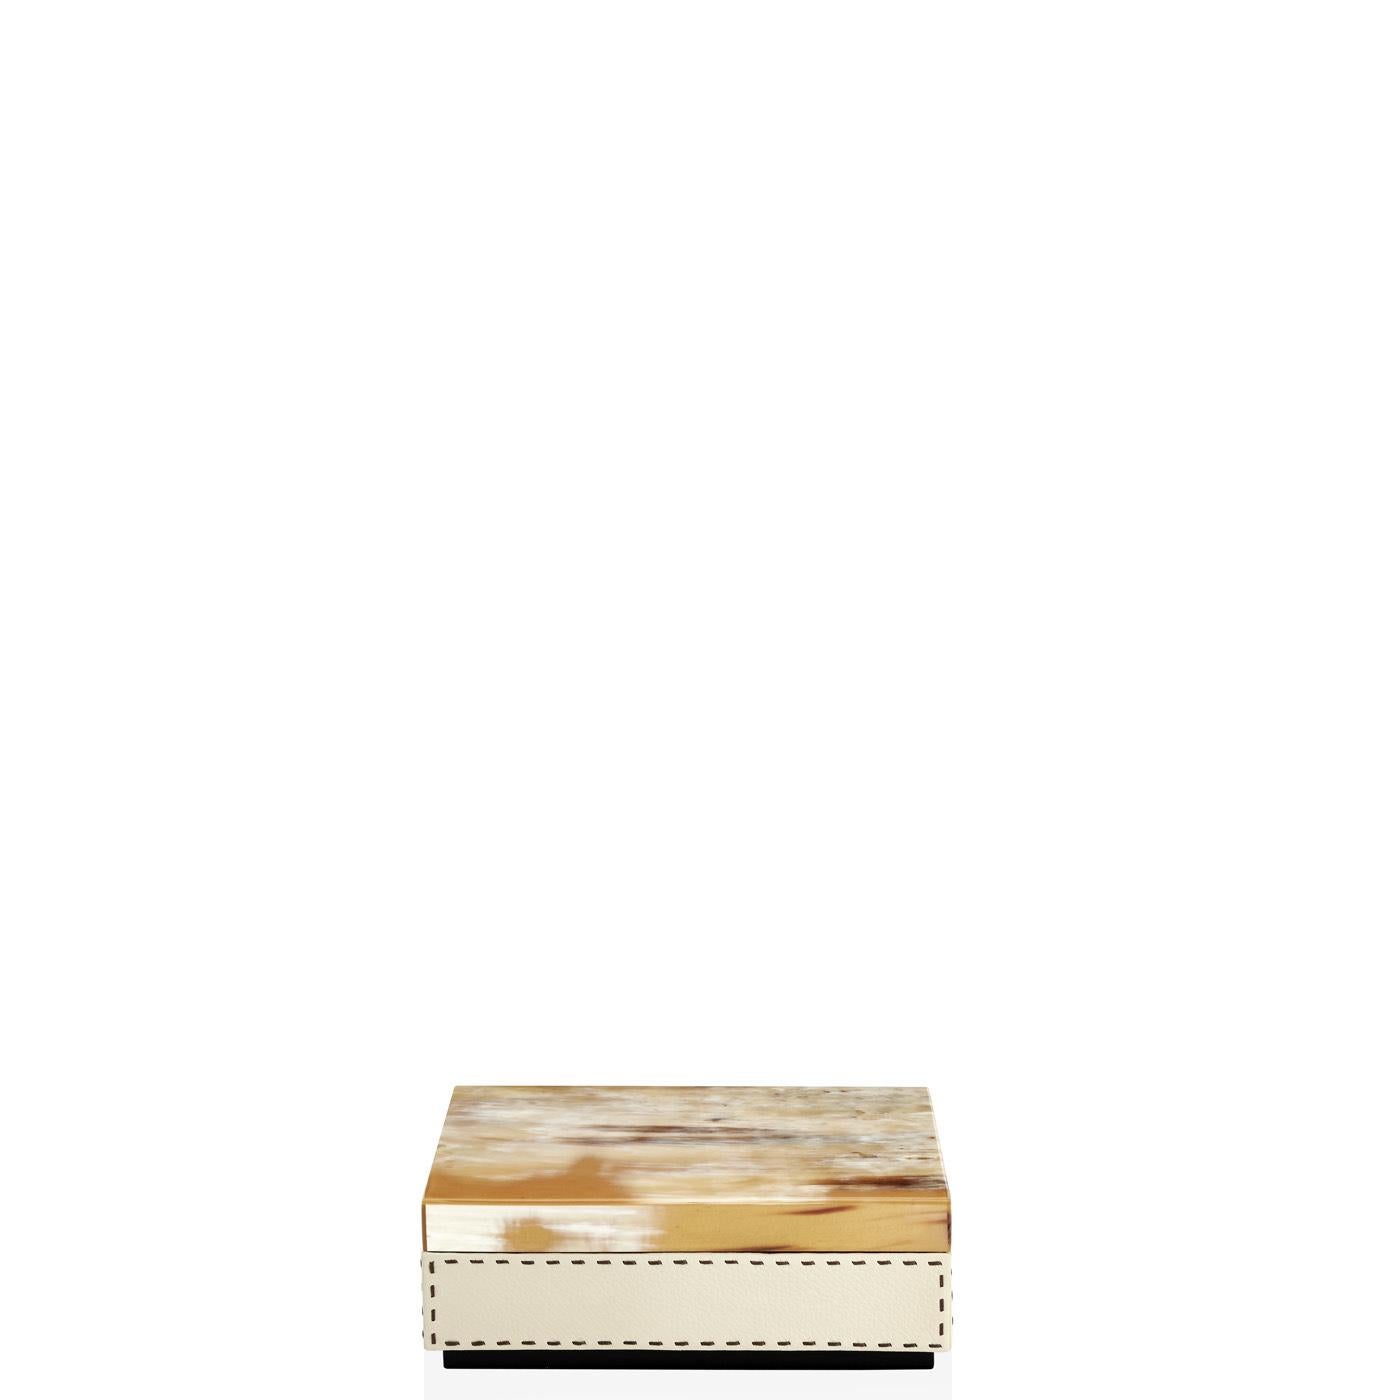 Ottavia Box in Pebbled Leather with Lid in Corno Italiano, Mod. 4466 In New Condition For Sale In Recanati, Macerata